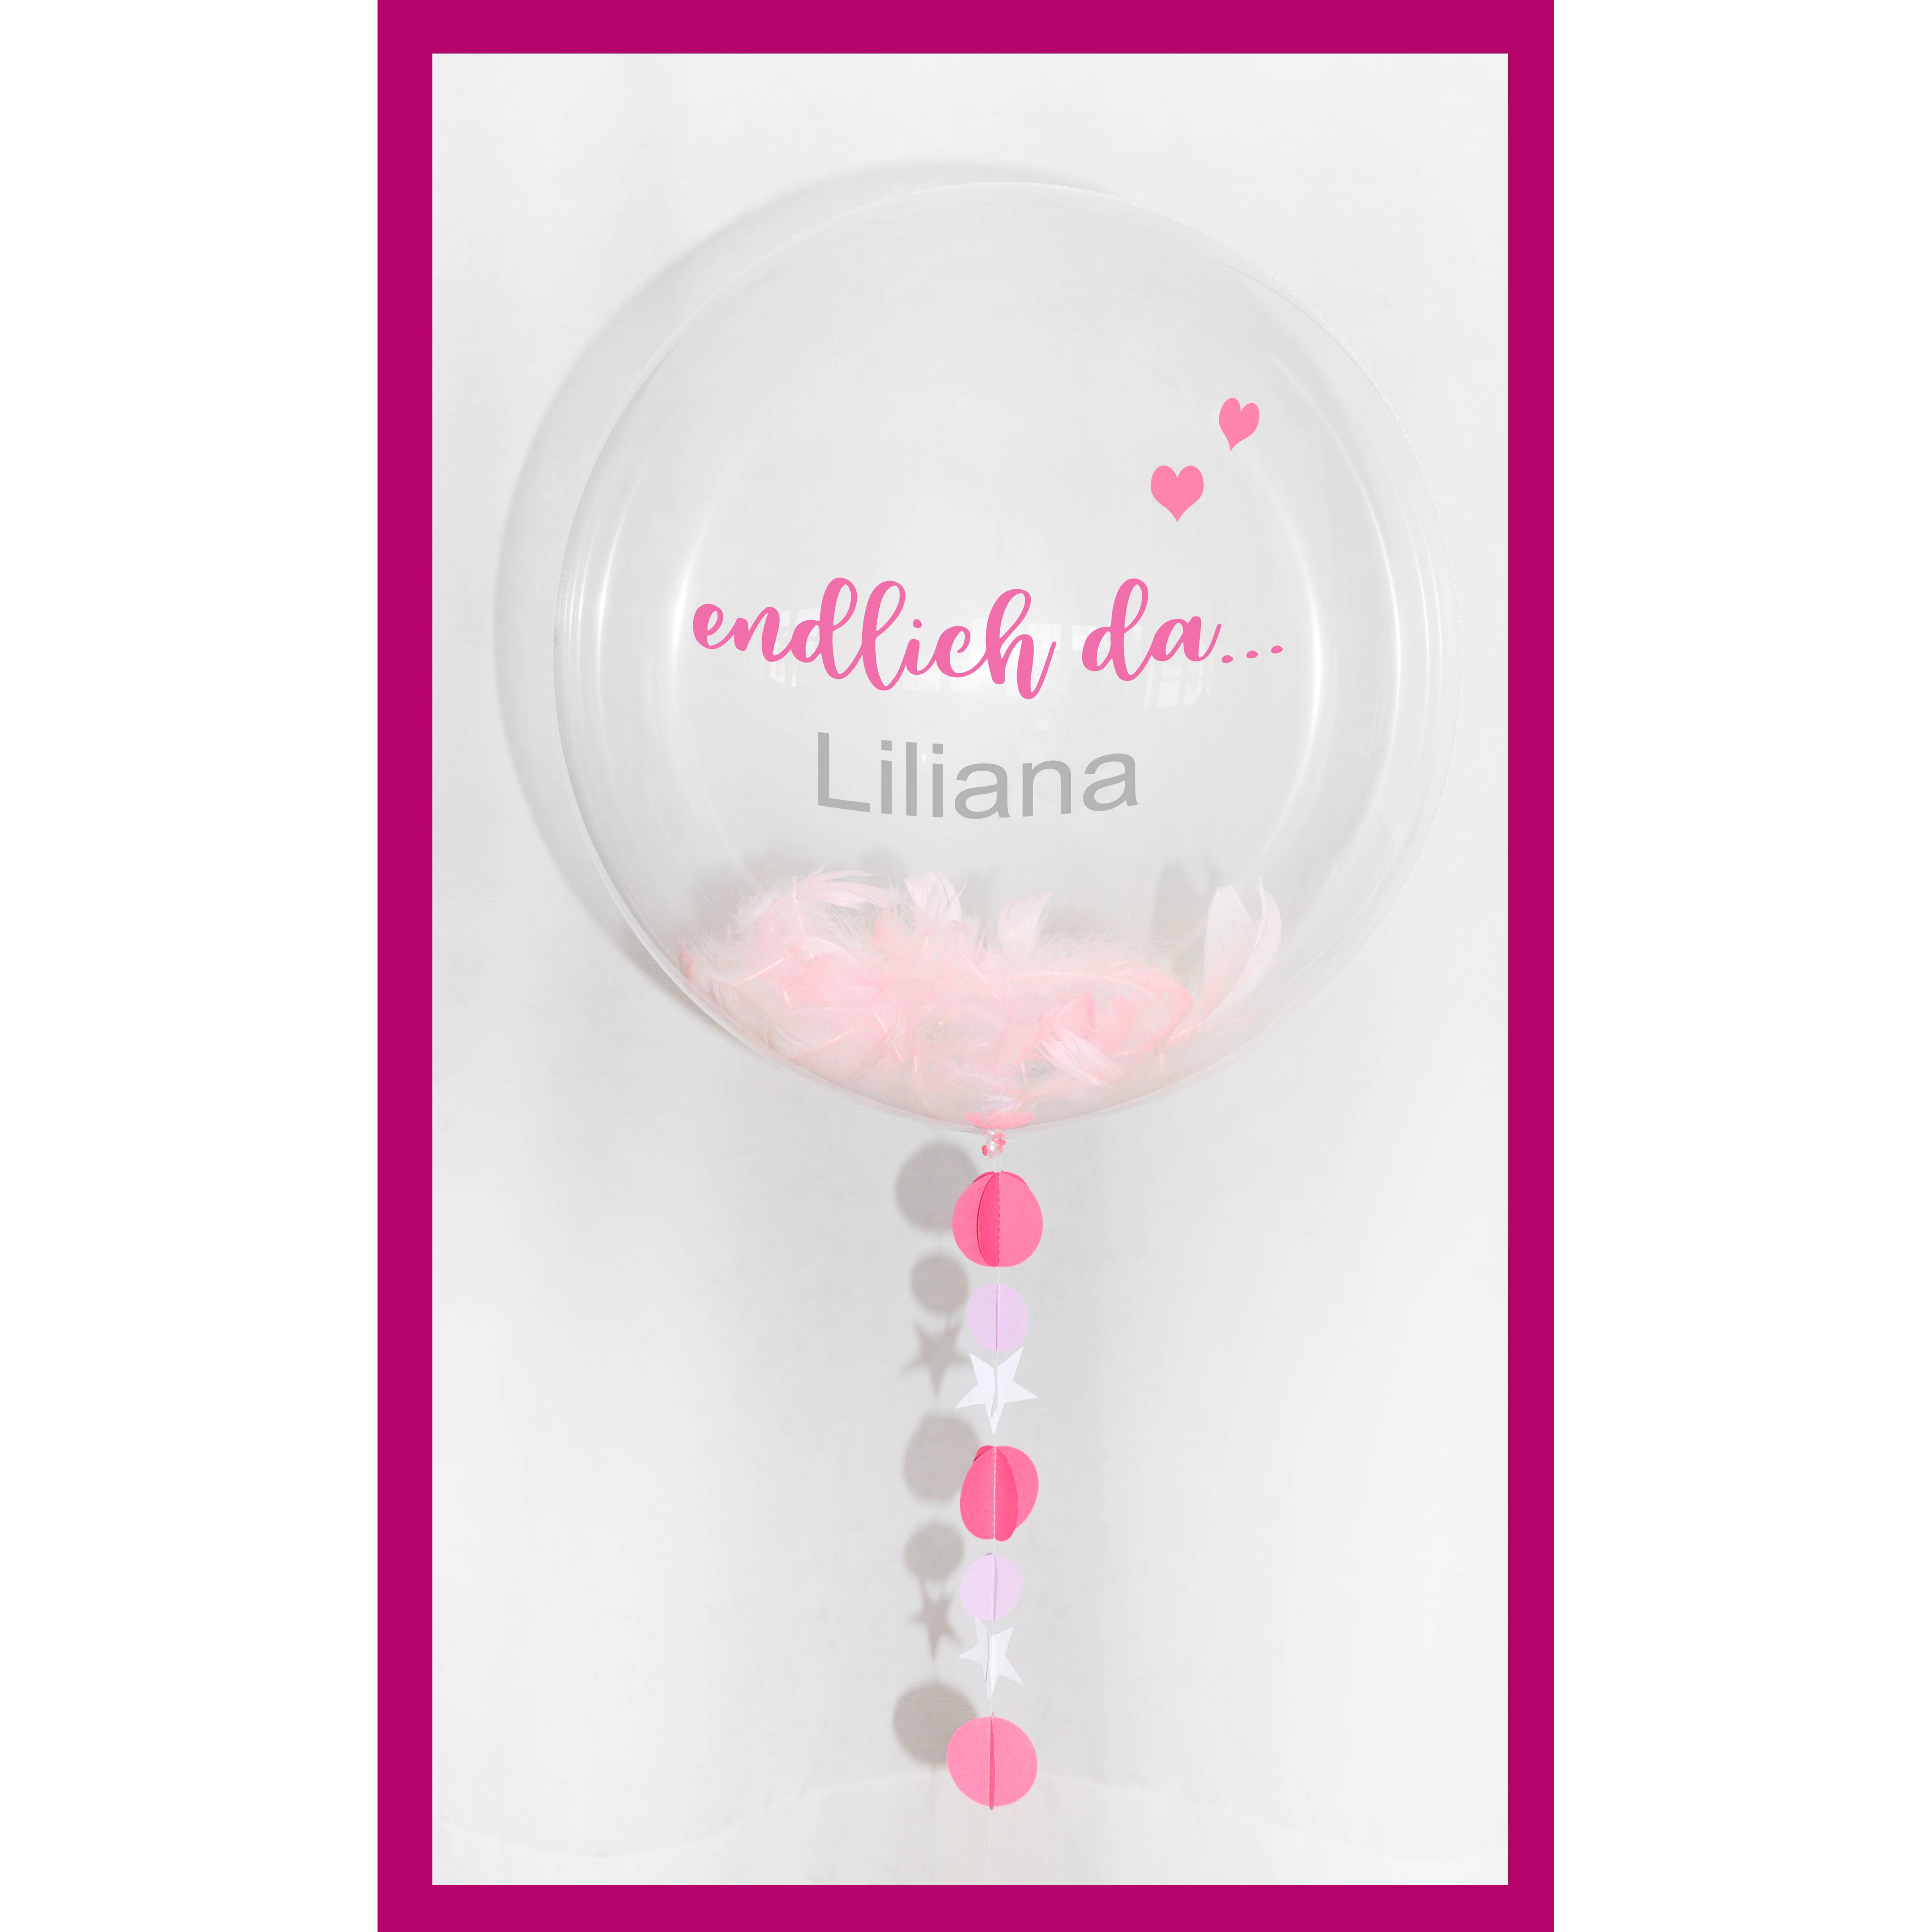 Ein bezauberndes Luftballon-Bubble mit der Aufschrift "Endlich da...". Perfekt für die Ankunft eines neuen Lebens. Individuell gestaltbar und mit liebevollen Details.